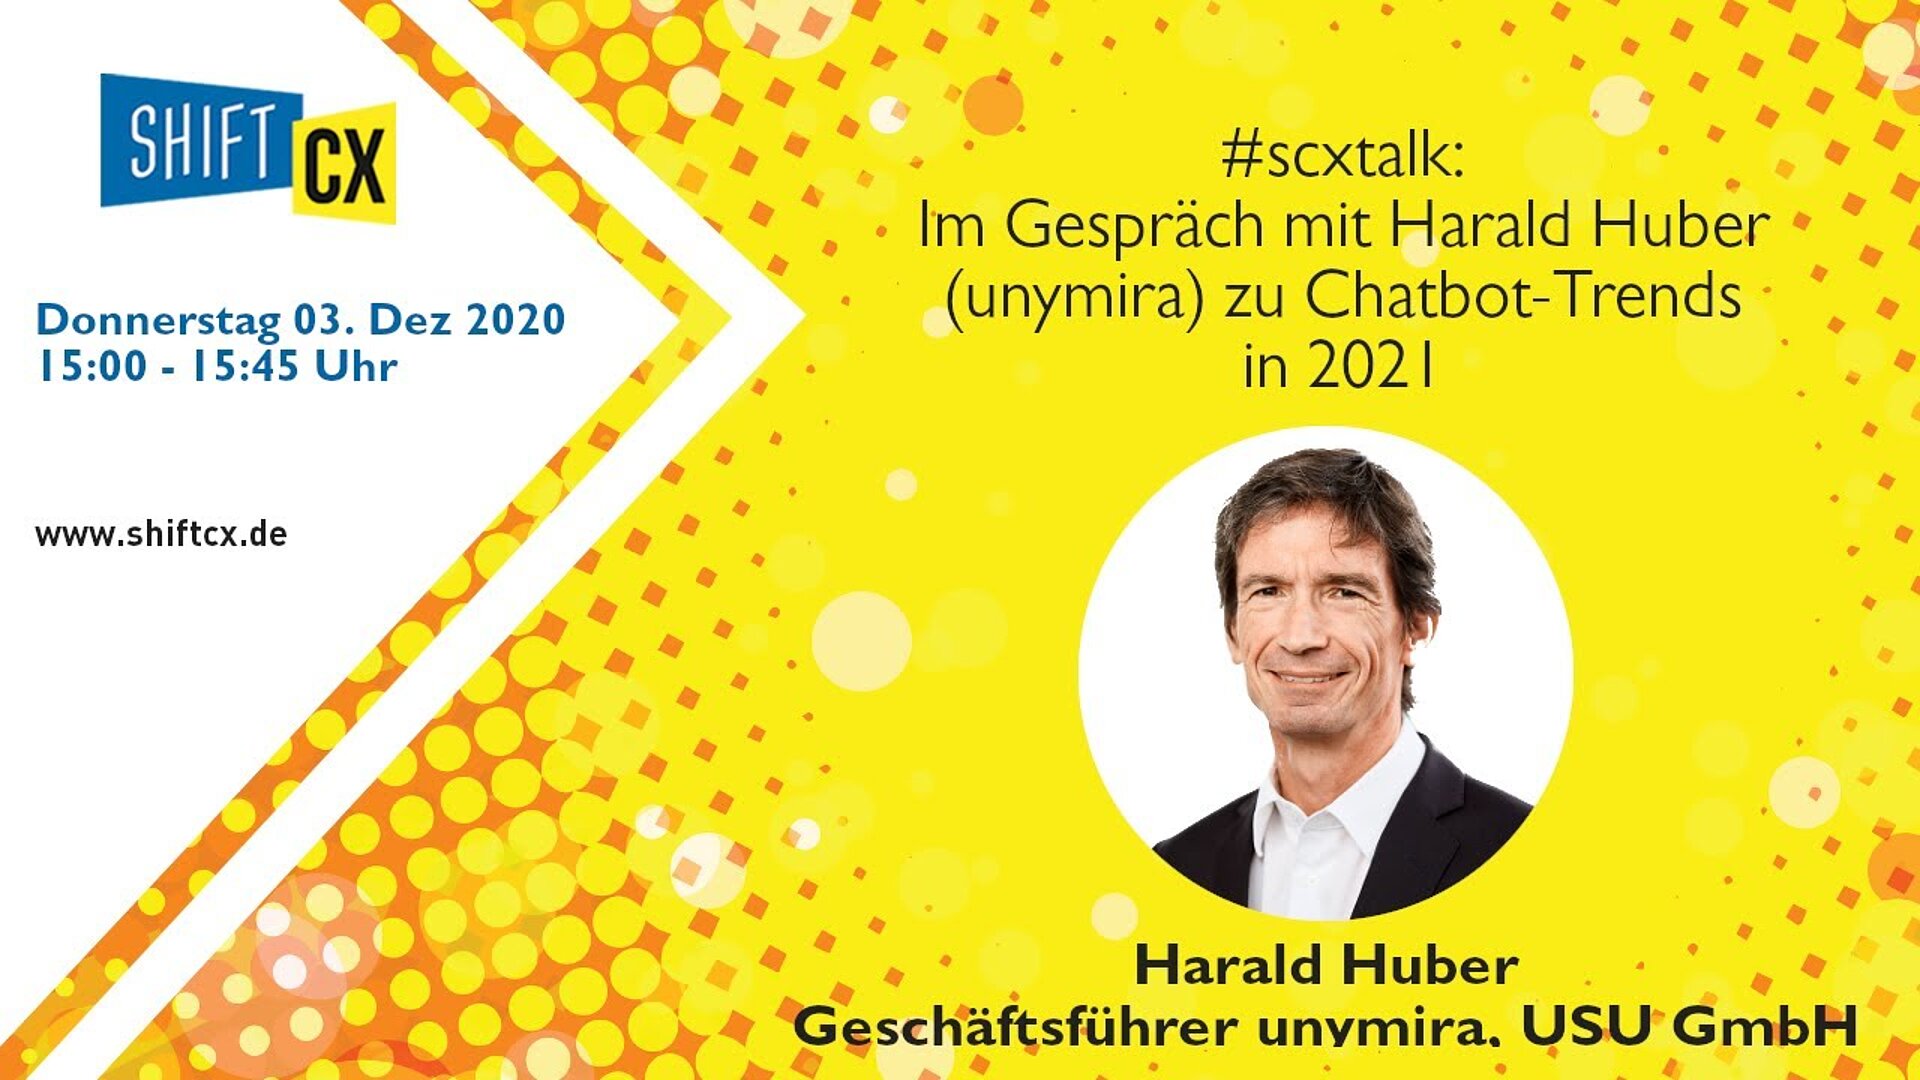 Im Gespräch mit Harald Huber (unymira) zu den Chatbot-Trends für 2021